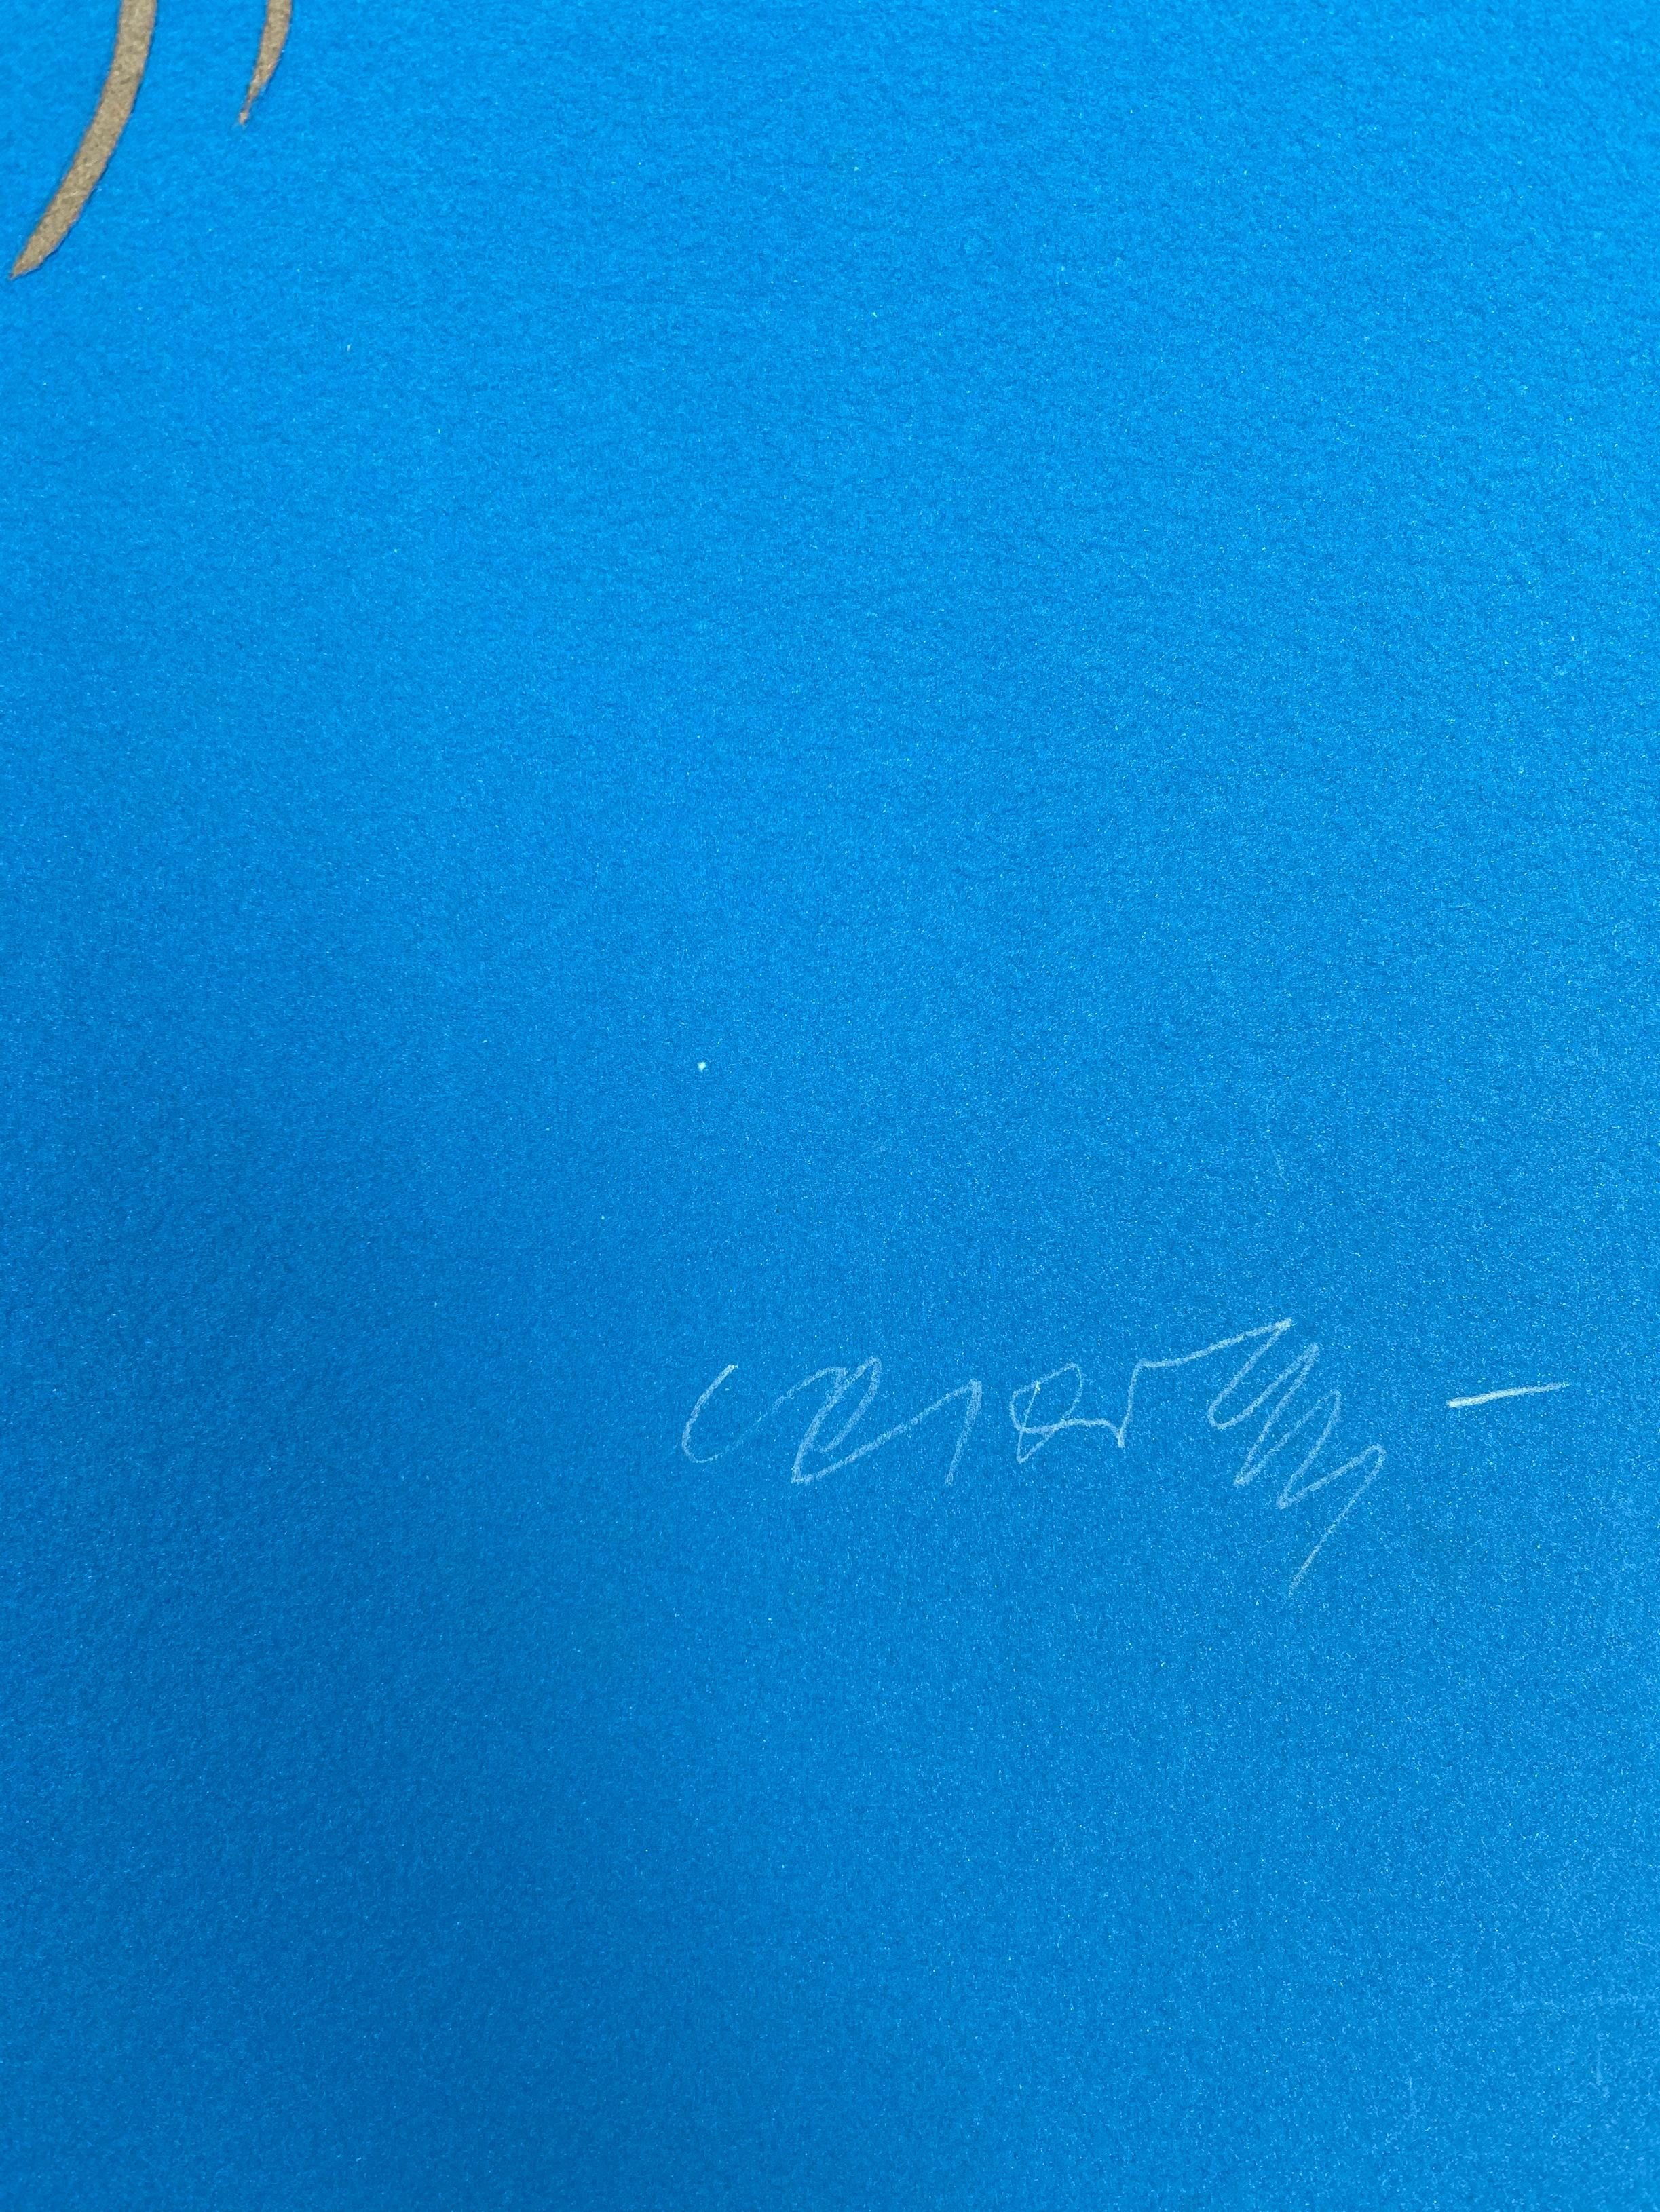 Vasarely - Zebra 
Gravure en relief 
Édition dans Cast Paper 
1989
98x79
1900€